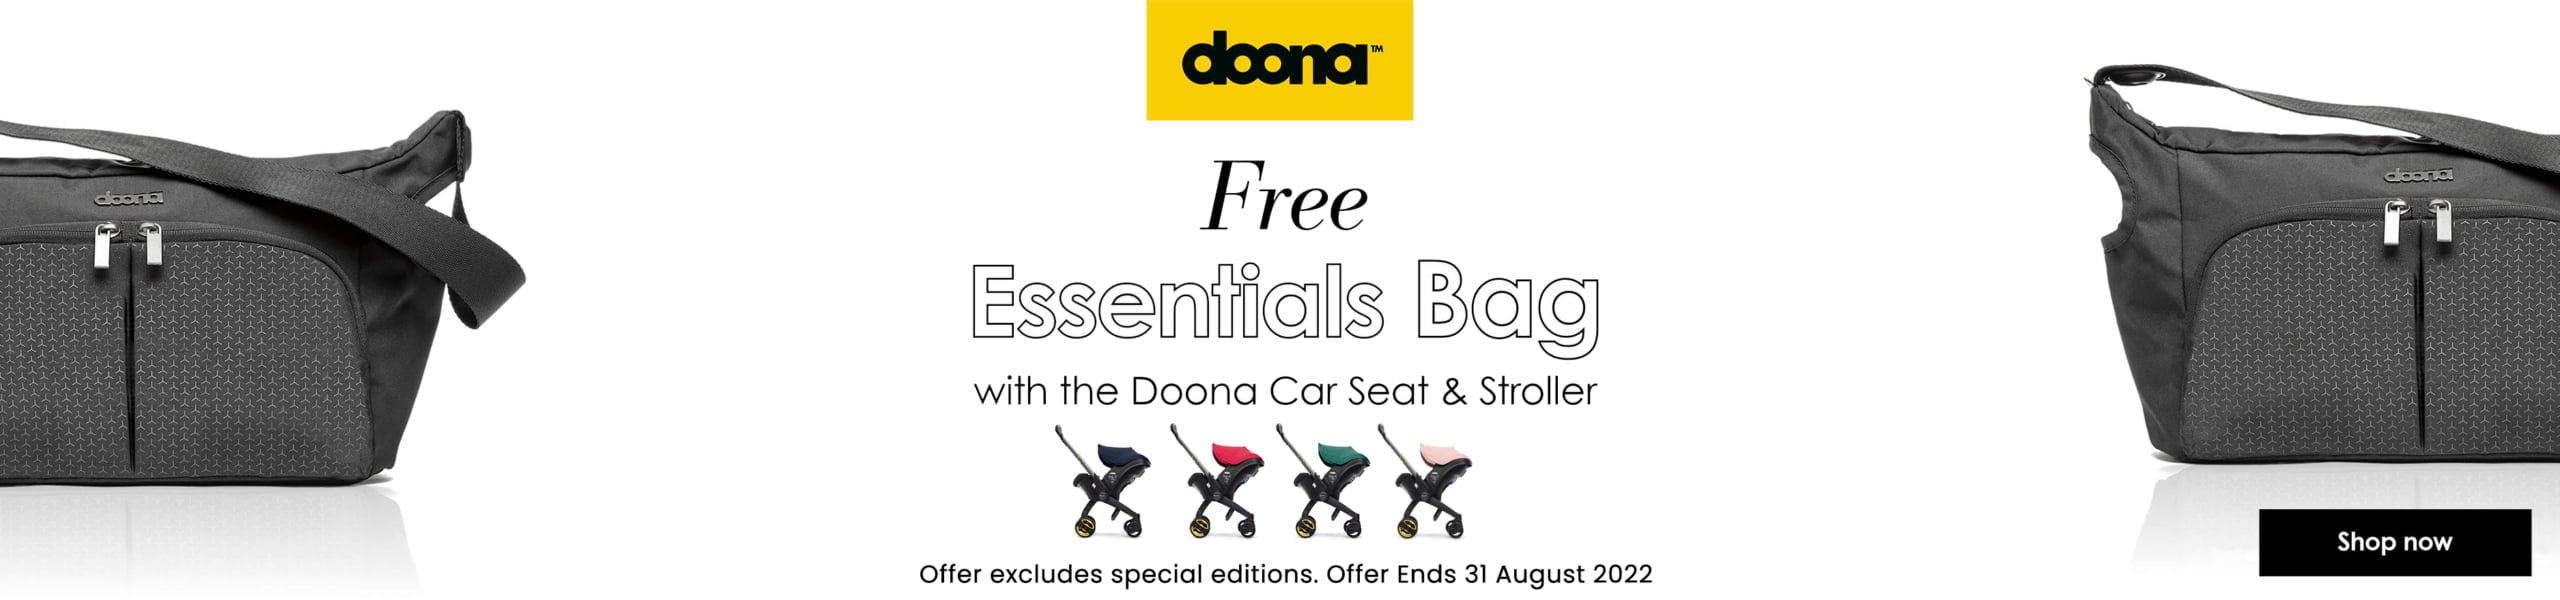 Doona Free Essentials Bag Promo